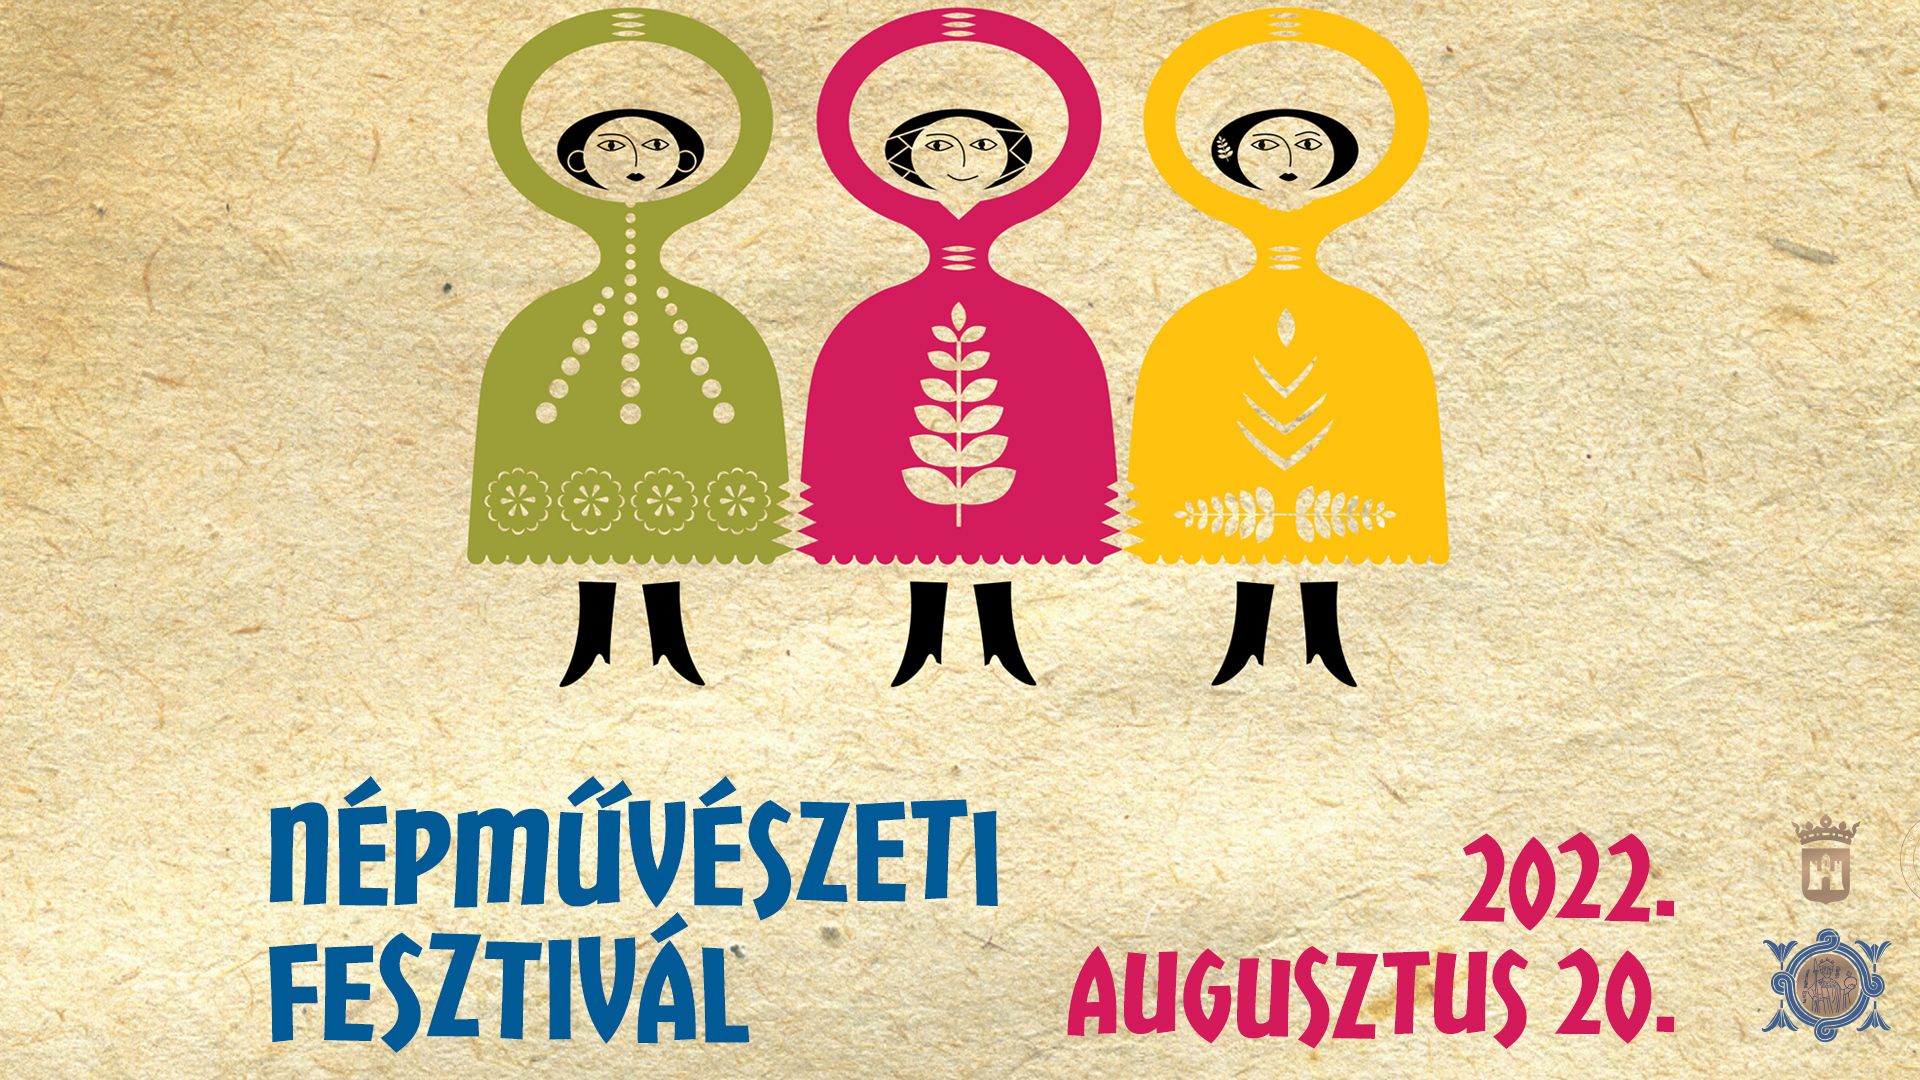 Népművészeti Fesztivál augusztus 20-án - minden korosztályt megszólítanak